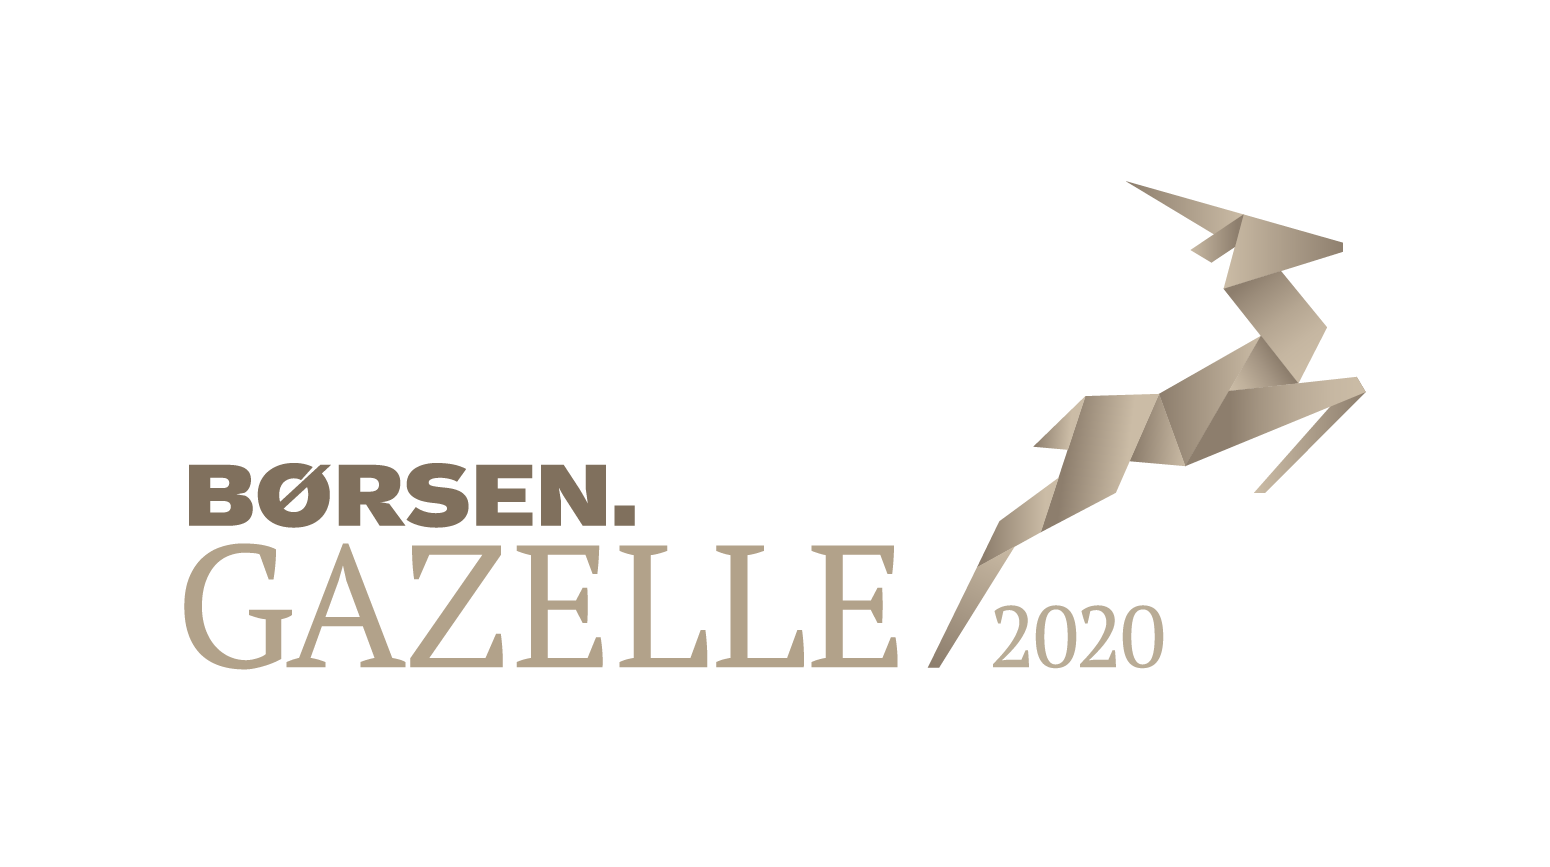 Coor er blevet kåret som en Gazelle virksomhed 2020